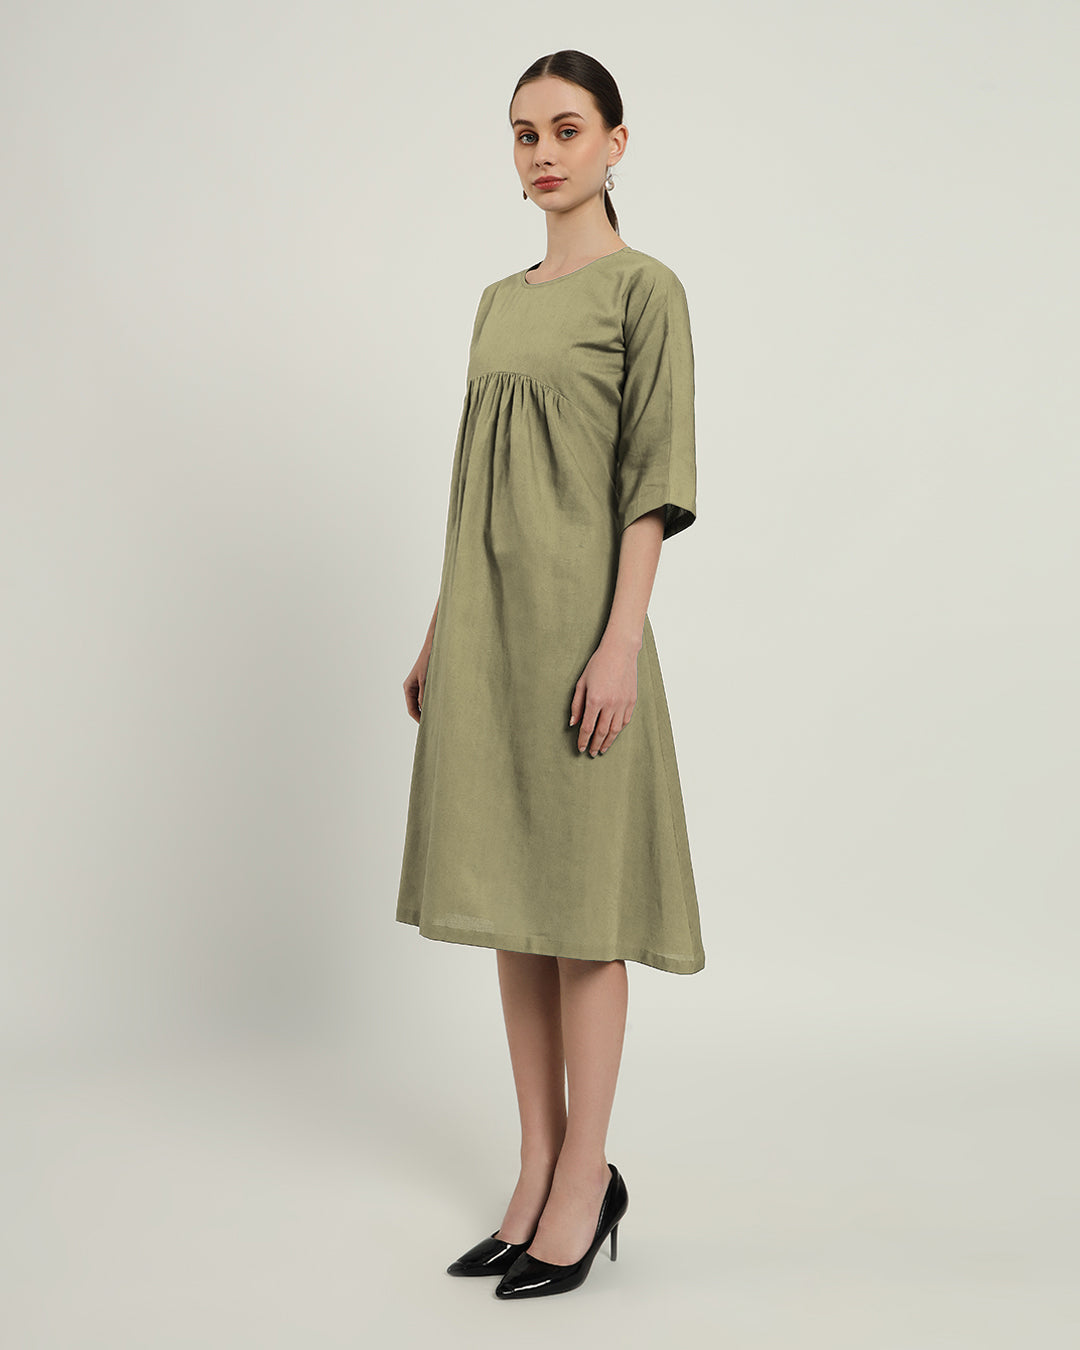 The Monrovia Daisy Olive Linen Dress